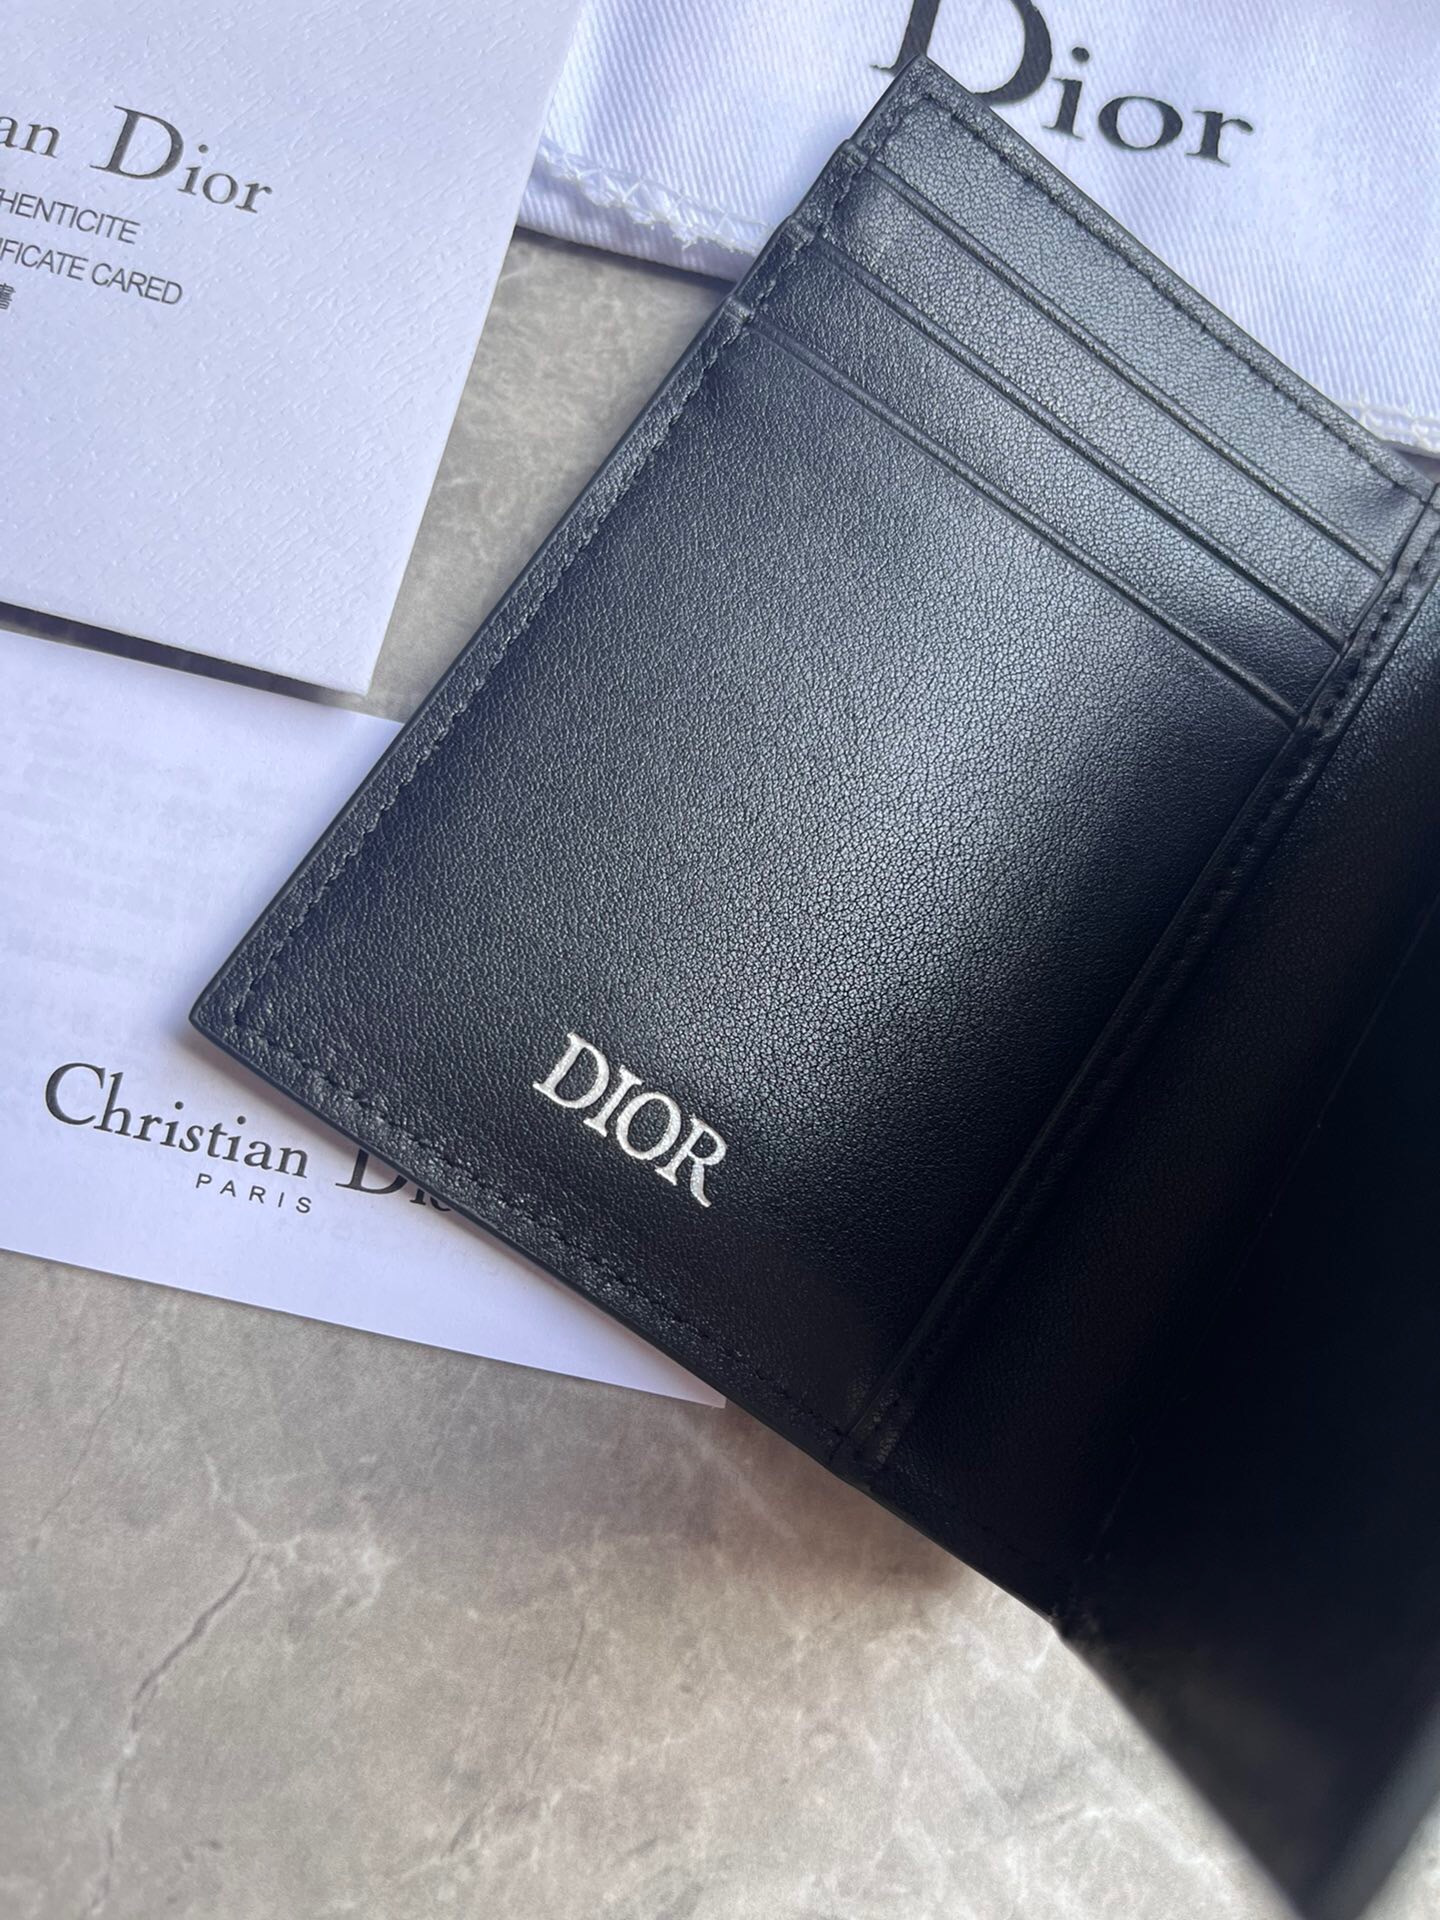 Dior男士新款雙摺卡夾 採用黑色光滑牛皮革精心制作高仿a貨